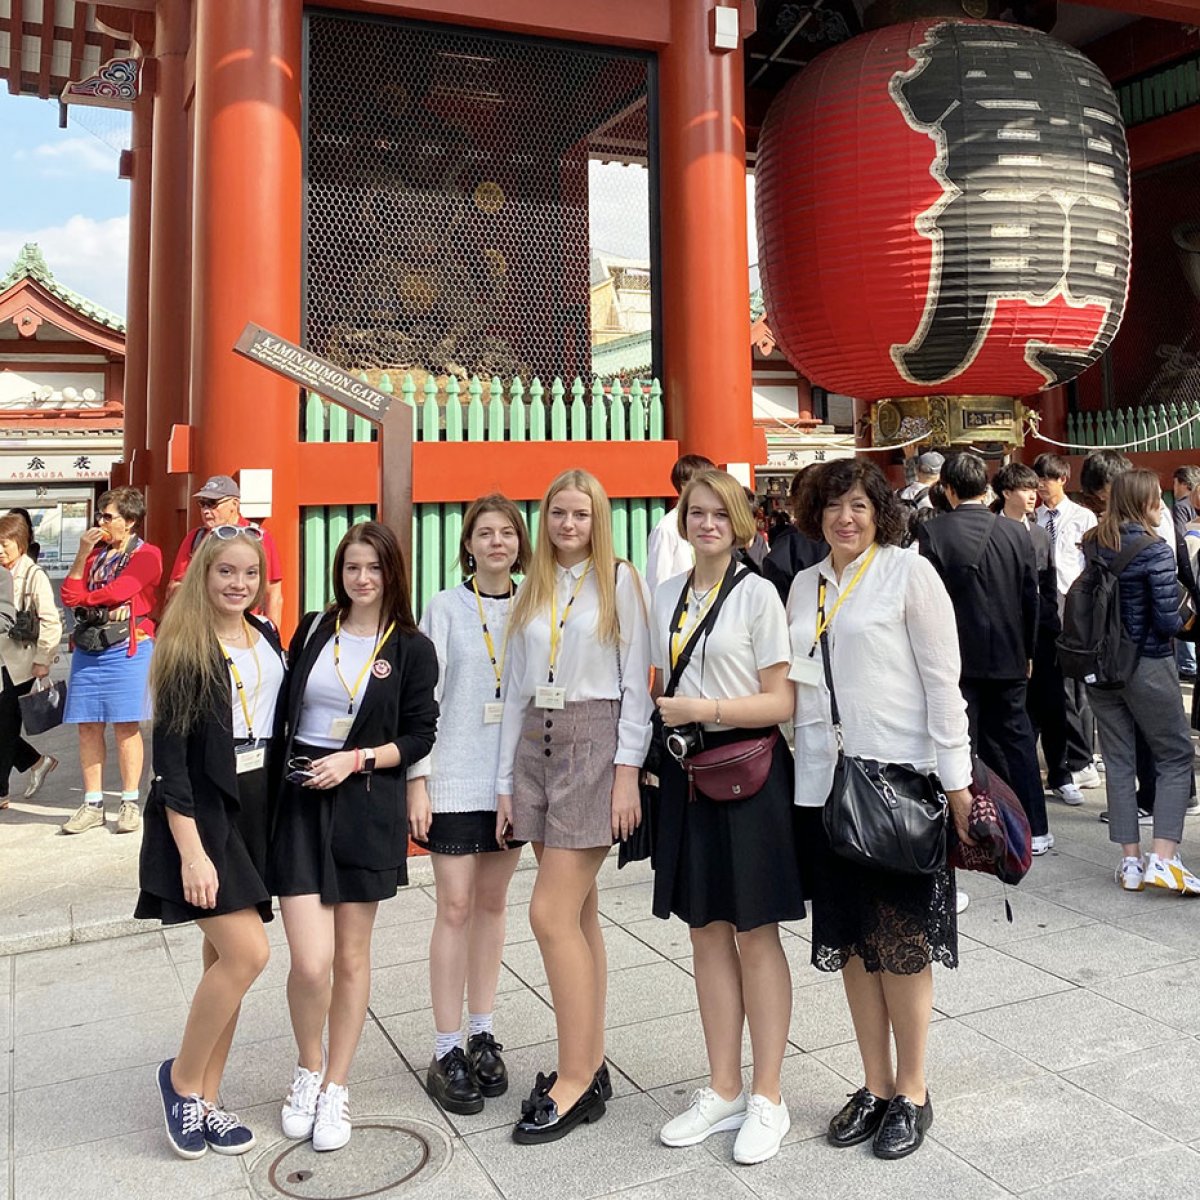 С 27 октября по 3 ноября 2019 года состоялась образовательная поездка японистов РХГА по программе Японо-Российского Центра молодёжных обменов (Japan Russia Youth Exchange Center). 😊